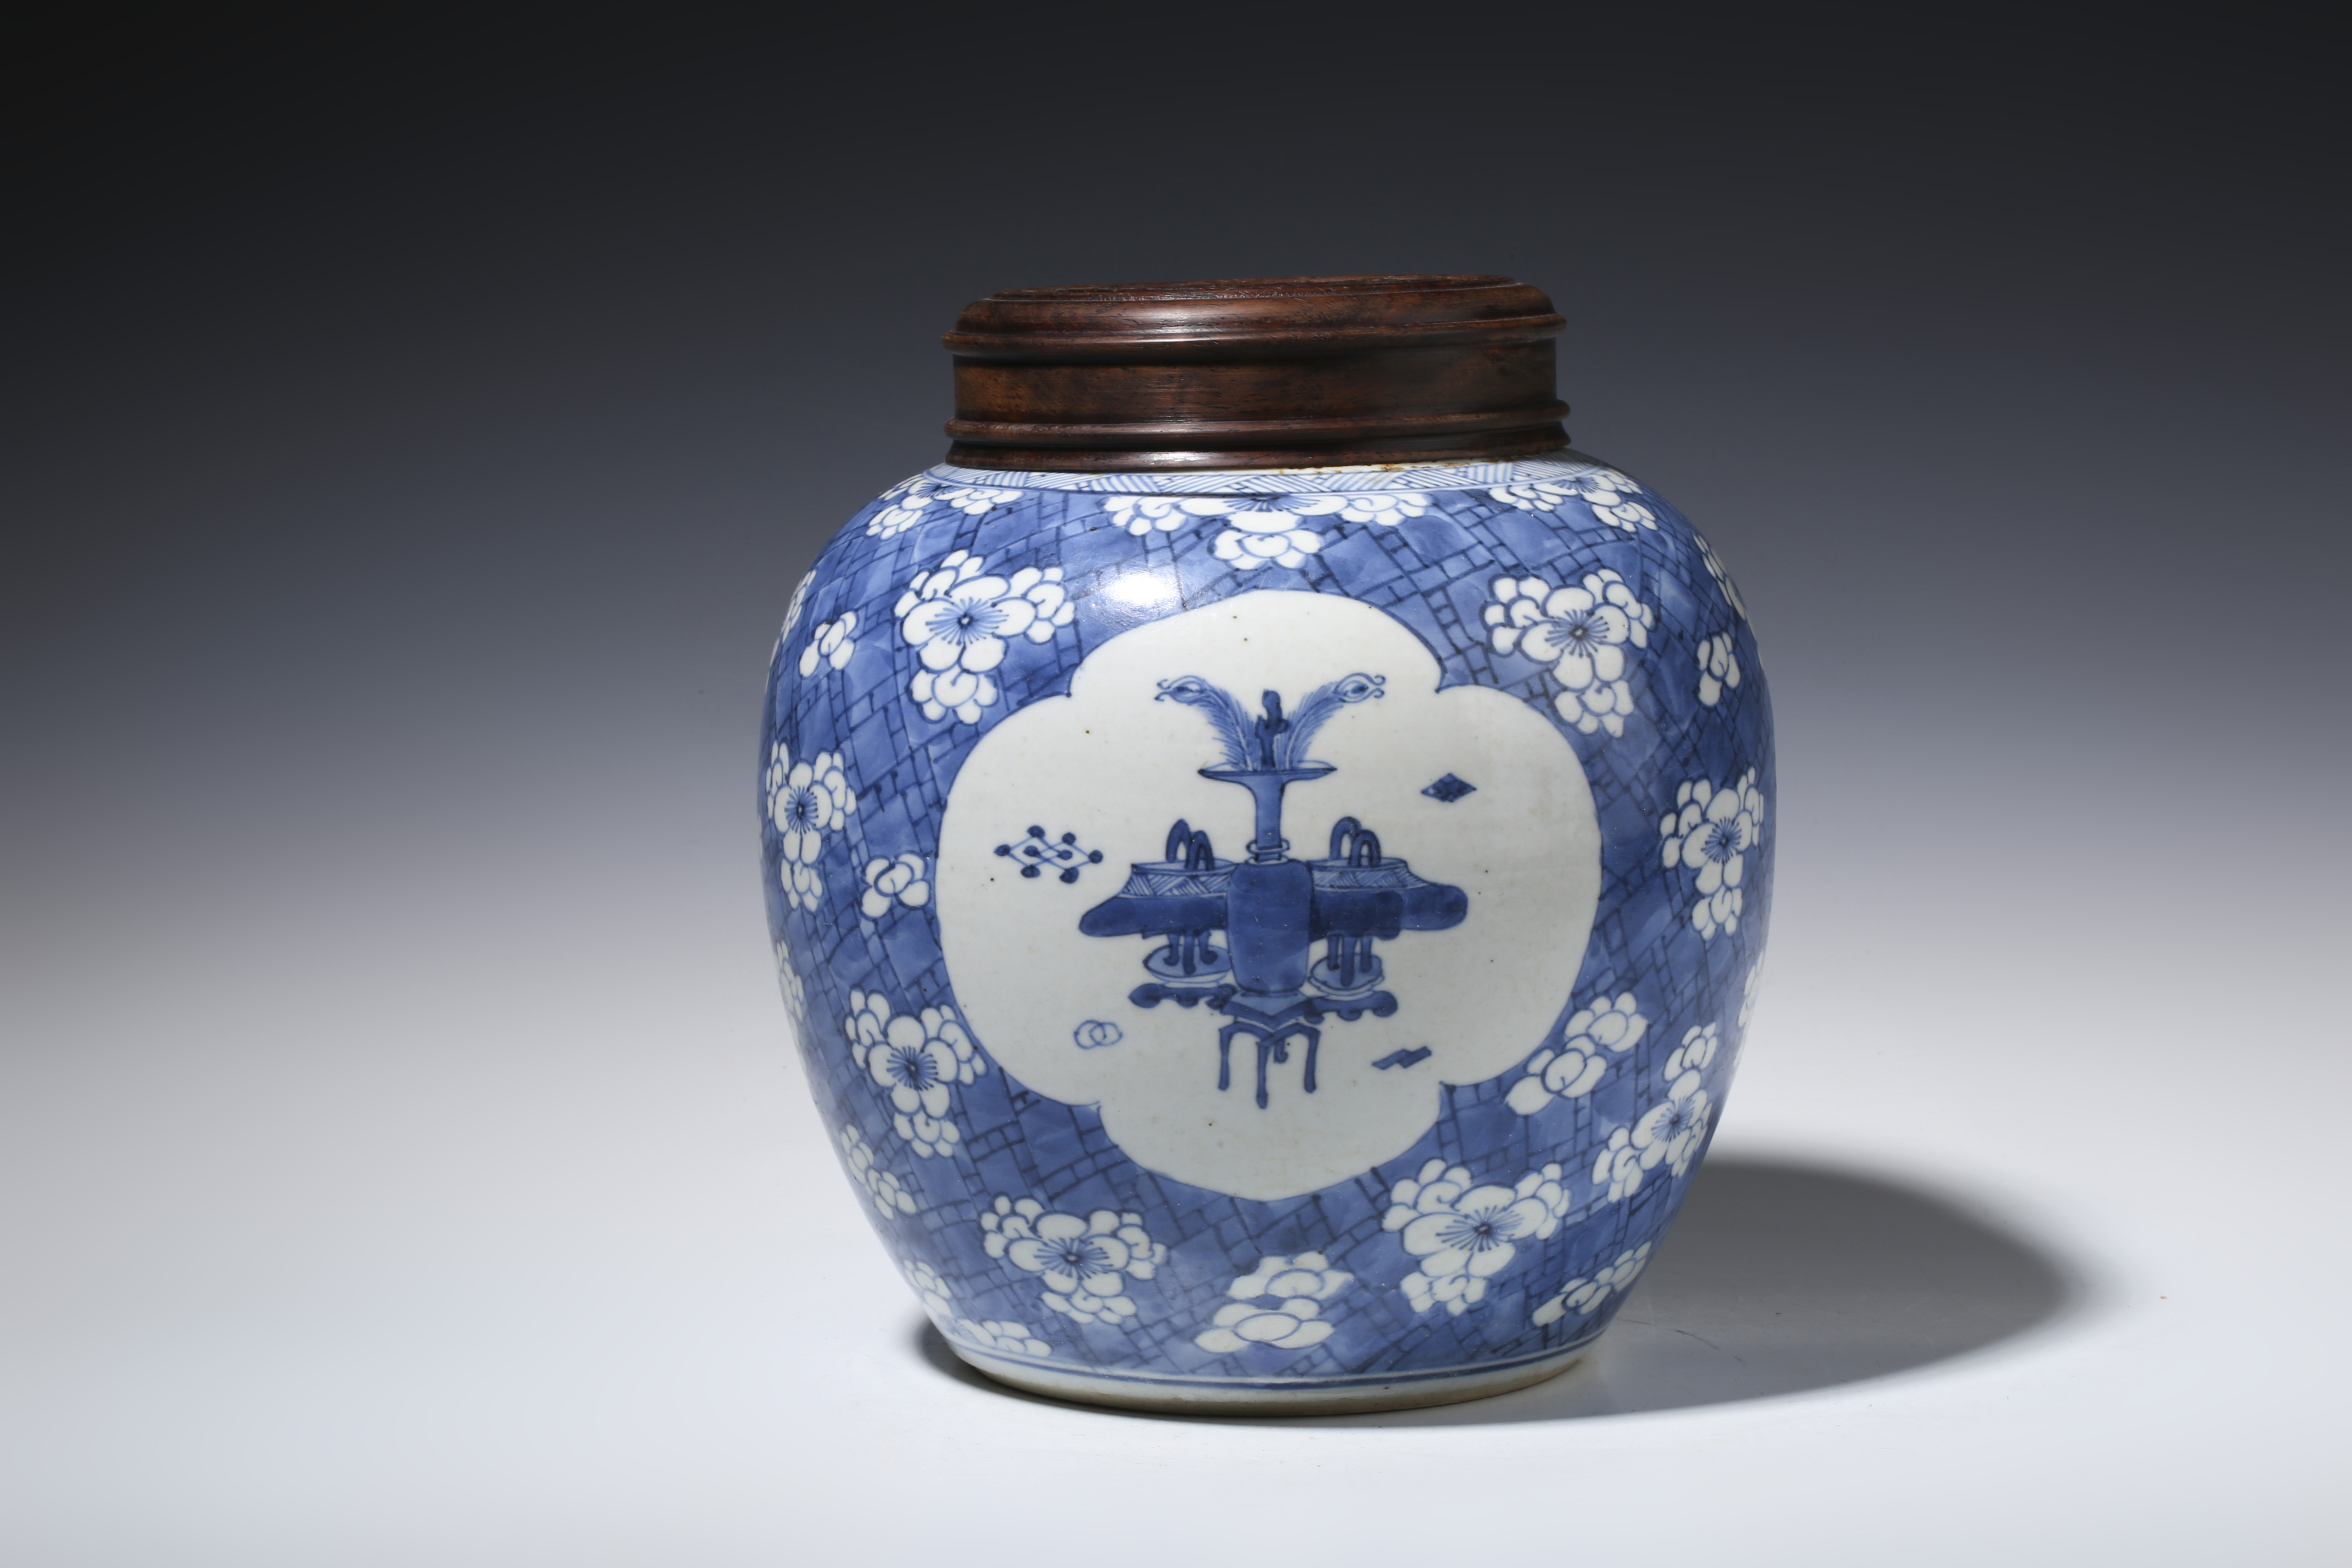 ▽鴻▽ 清 康熙年製款 古陶瓷品 青花 八仙人物紋 卷口瓶 置物 古賞物 